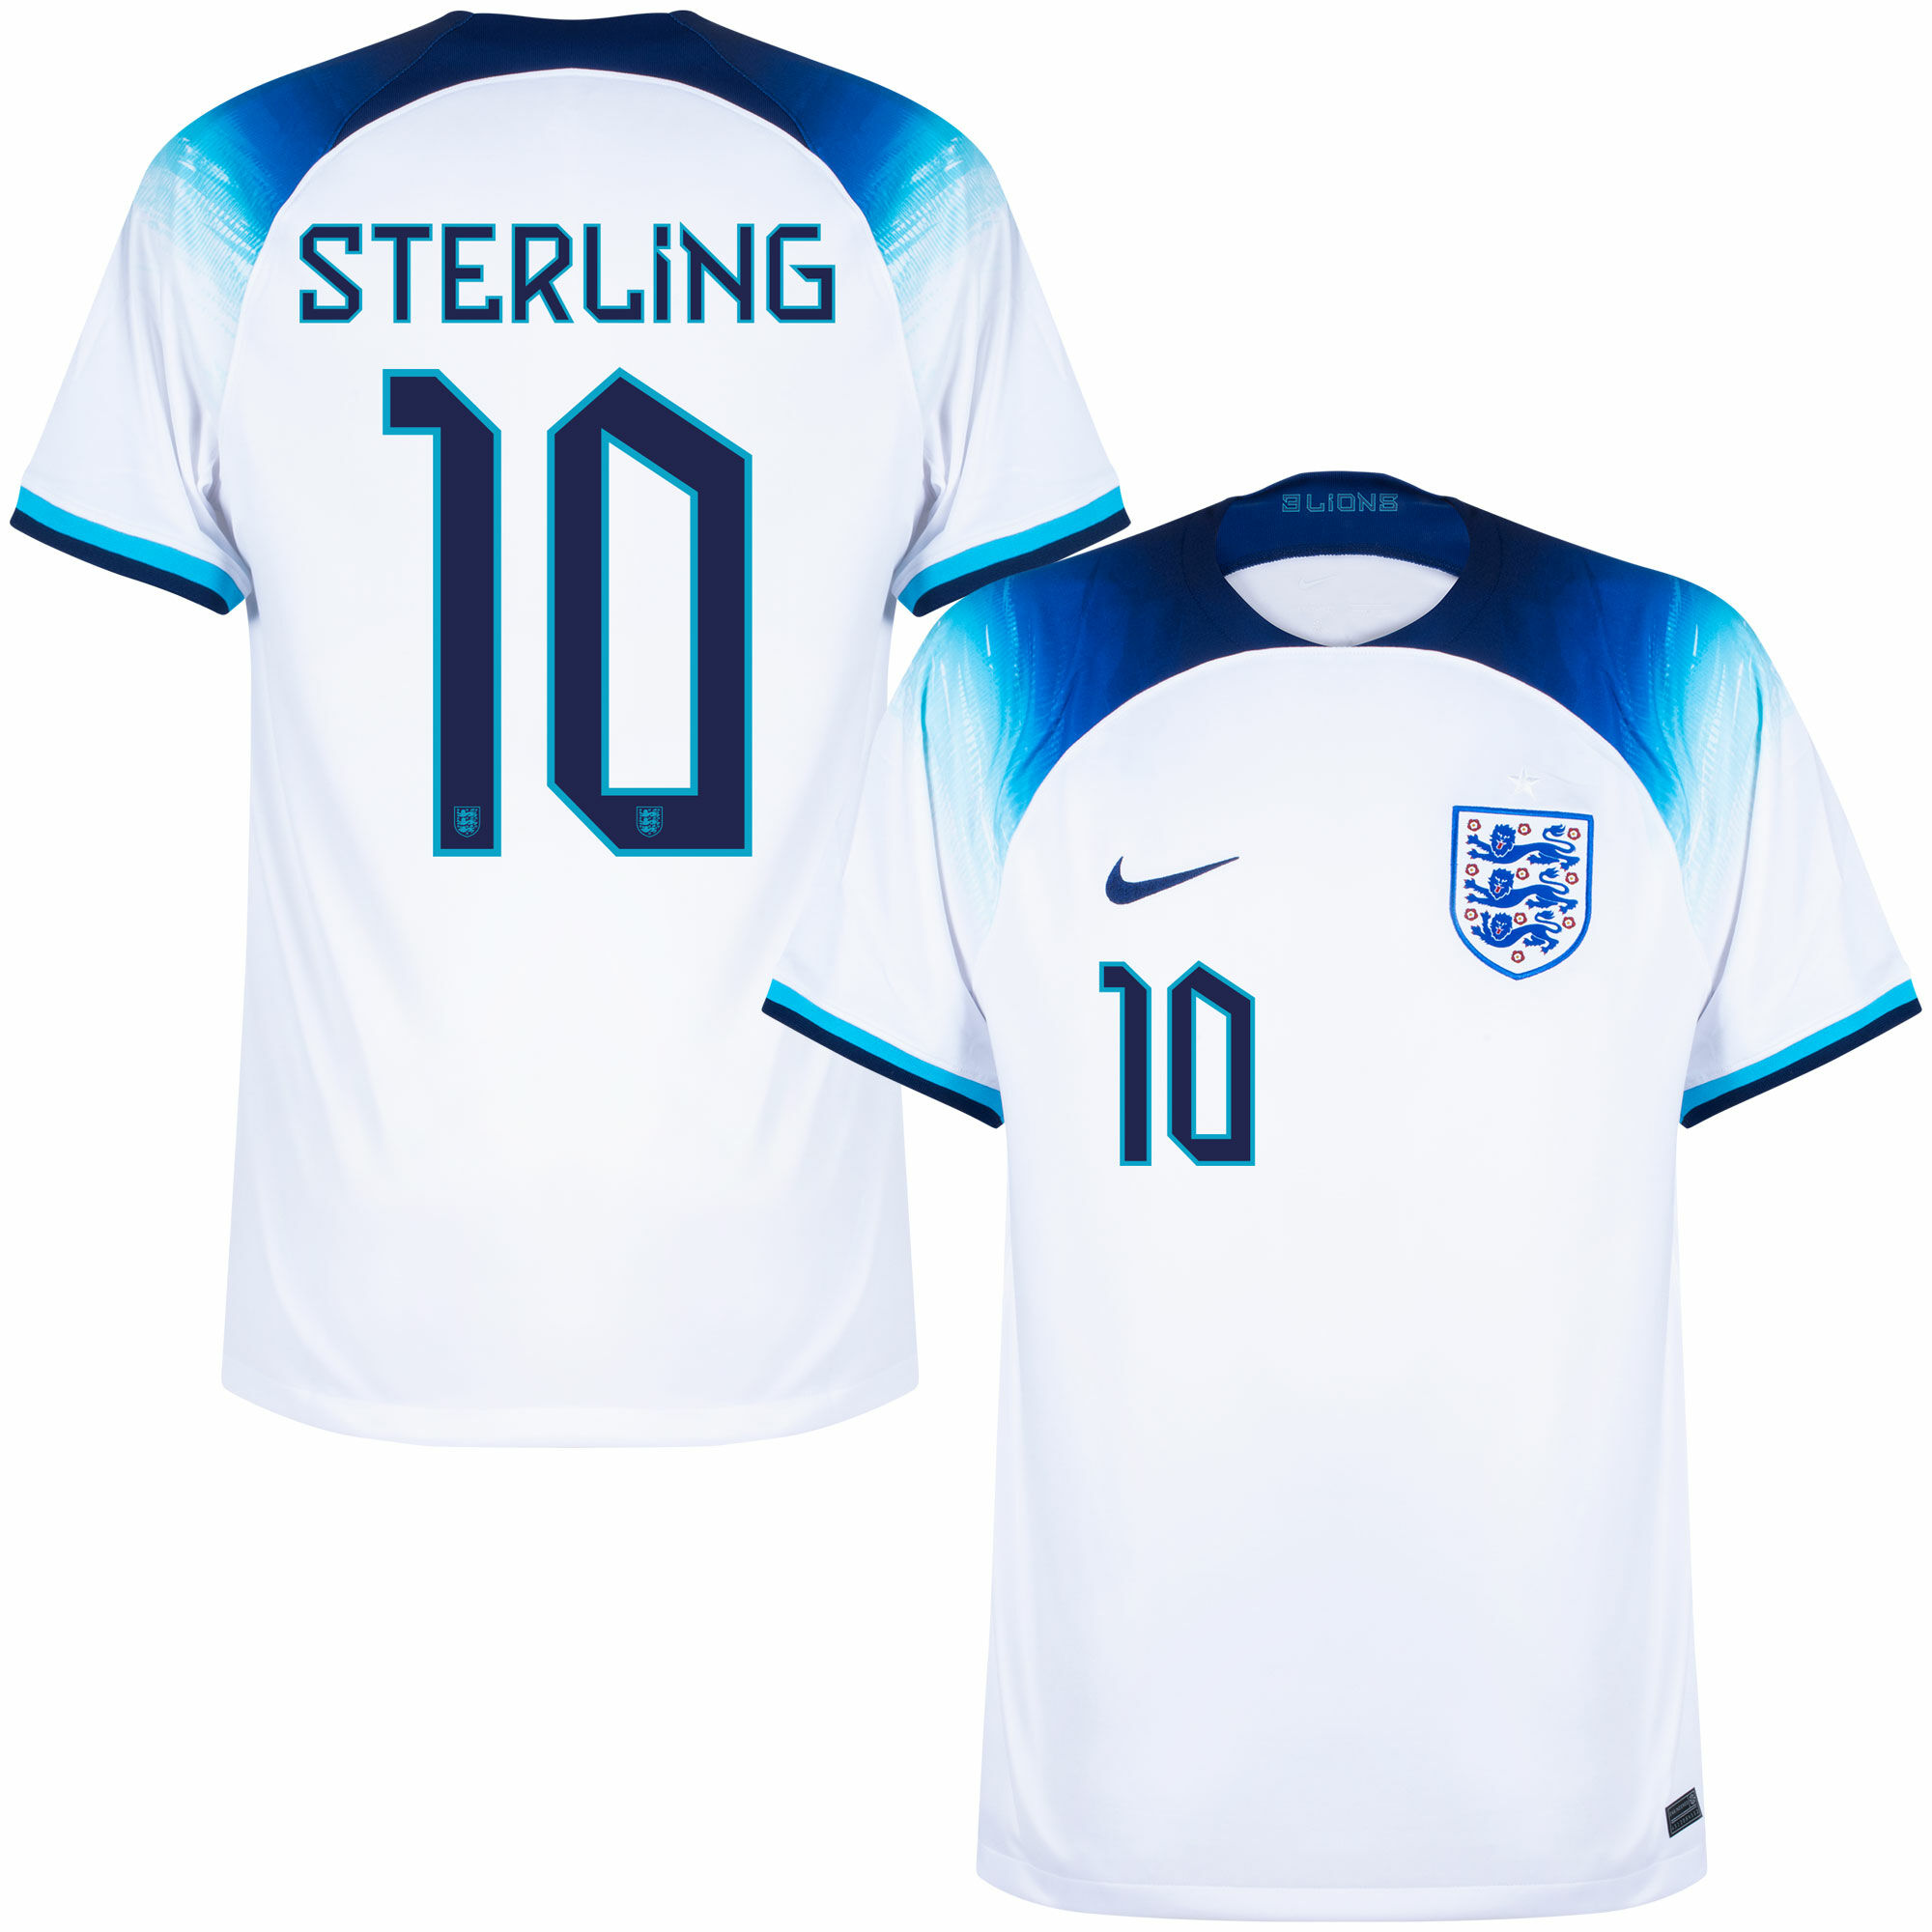 Anglie - Dres fotbalový - oficiální potisk, Raheem Sterling, číslo 10, domácí, bílý, sezóna 2022/23